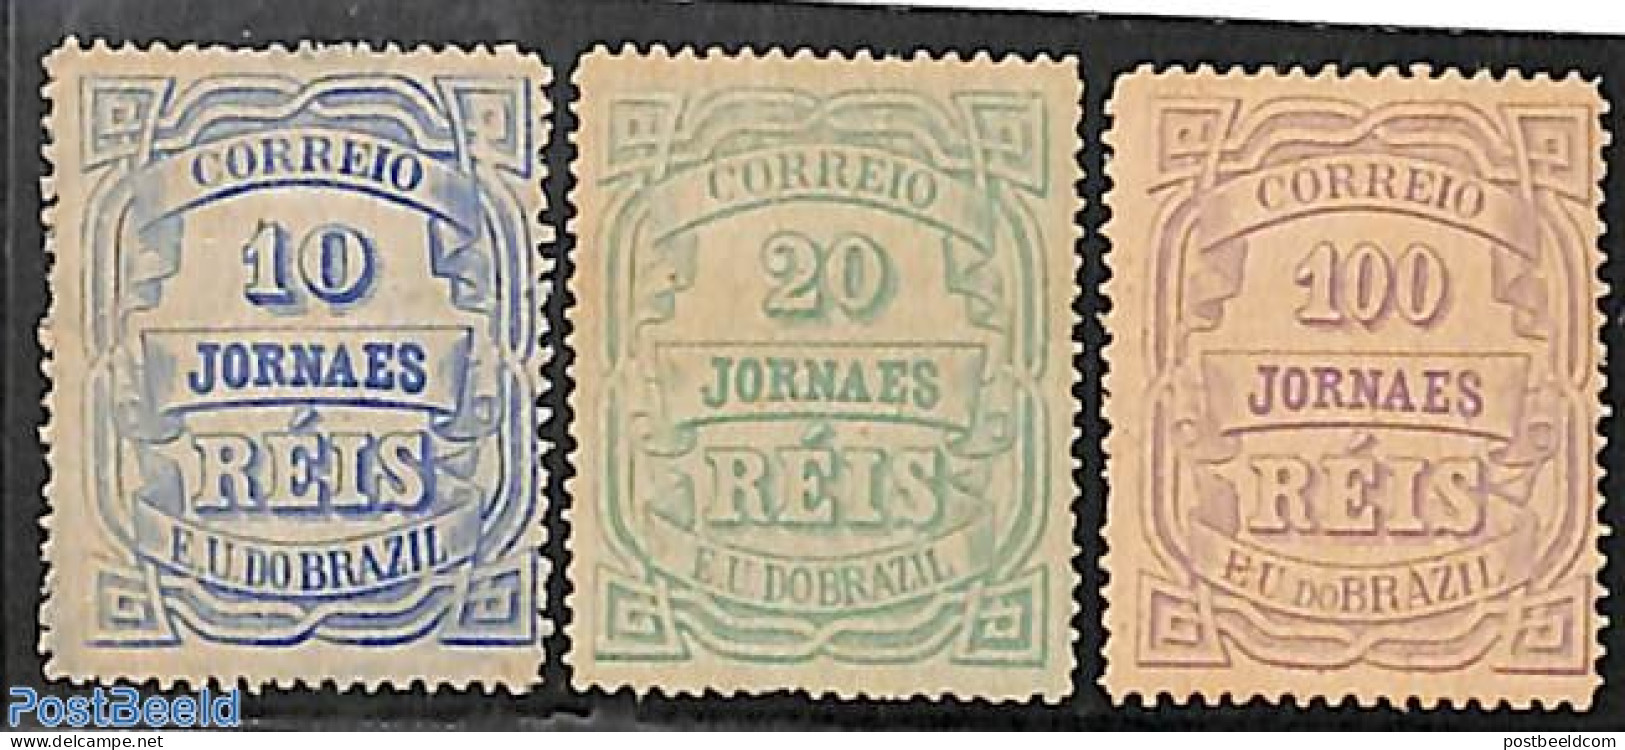 Brazil 1890 Newspaper Stamps 3v, Unused (hinged), History - Newspapers & Journalism - Ongebruikt